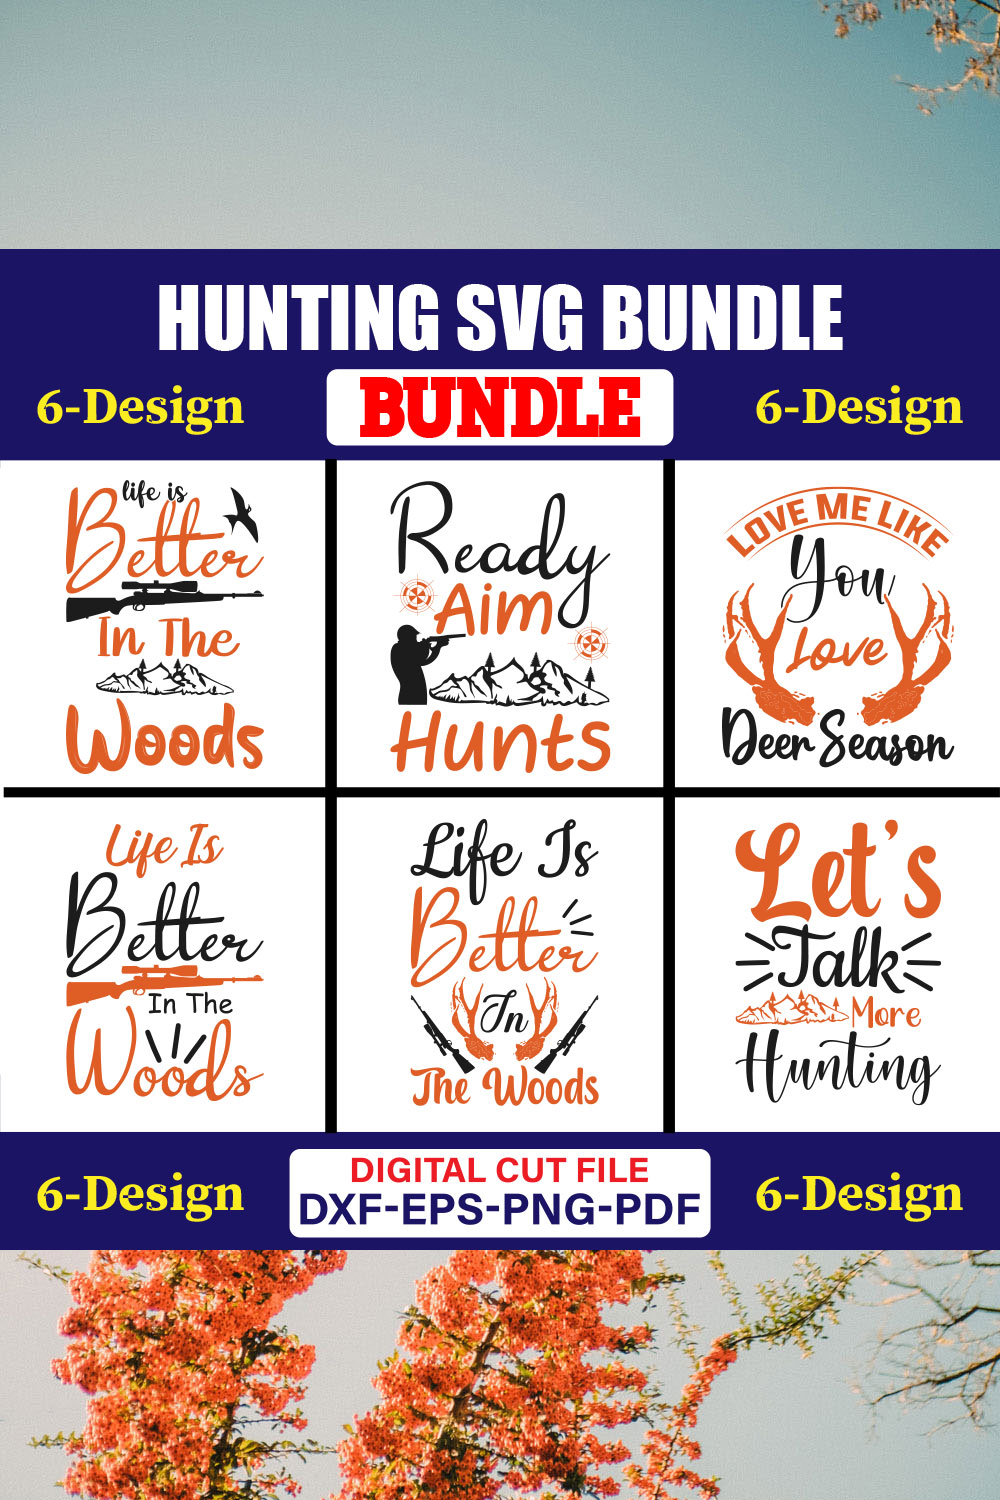 Hunting SVG T-shirt Design Bundle Vol-03 pinterest preview image.